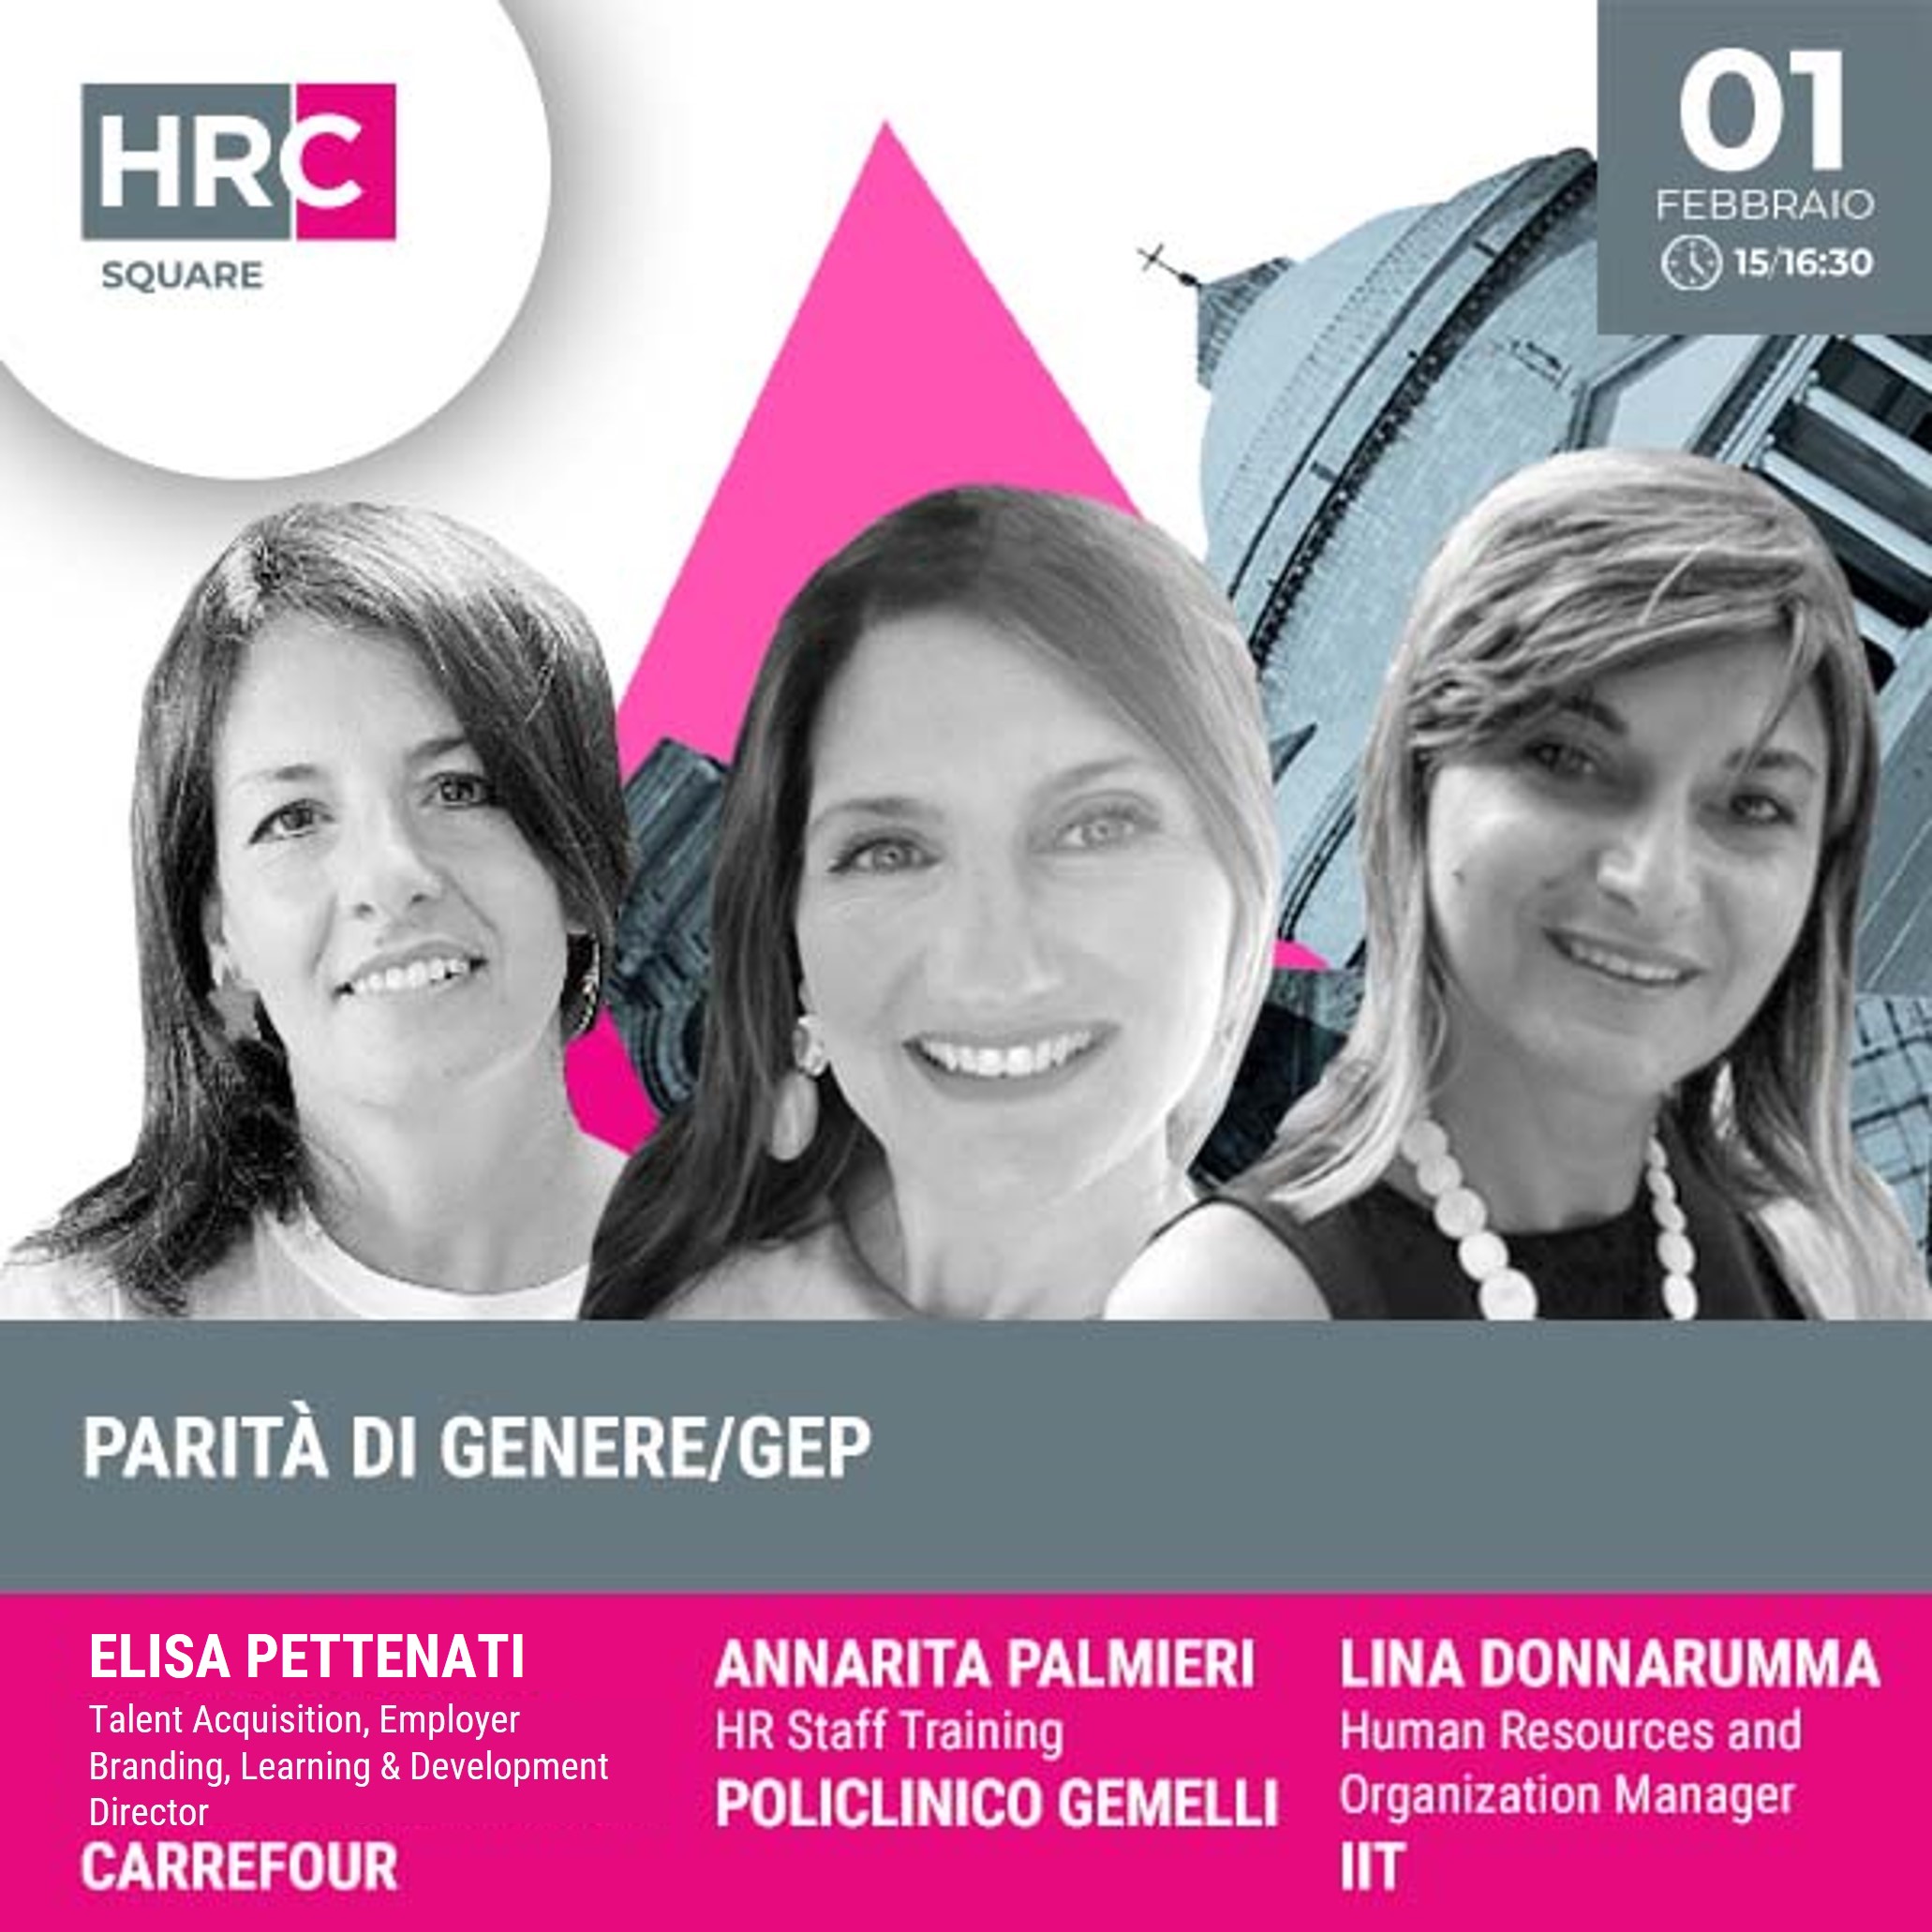 HRC SQUARE - PARITÀ DI GENERE / GEP